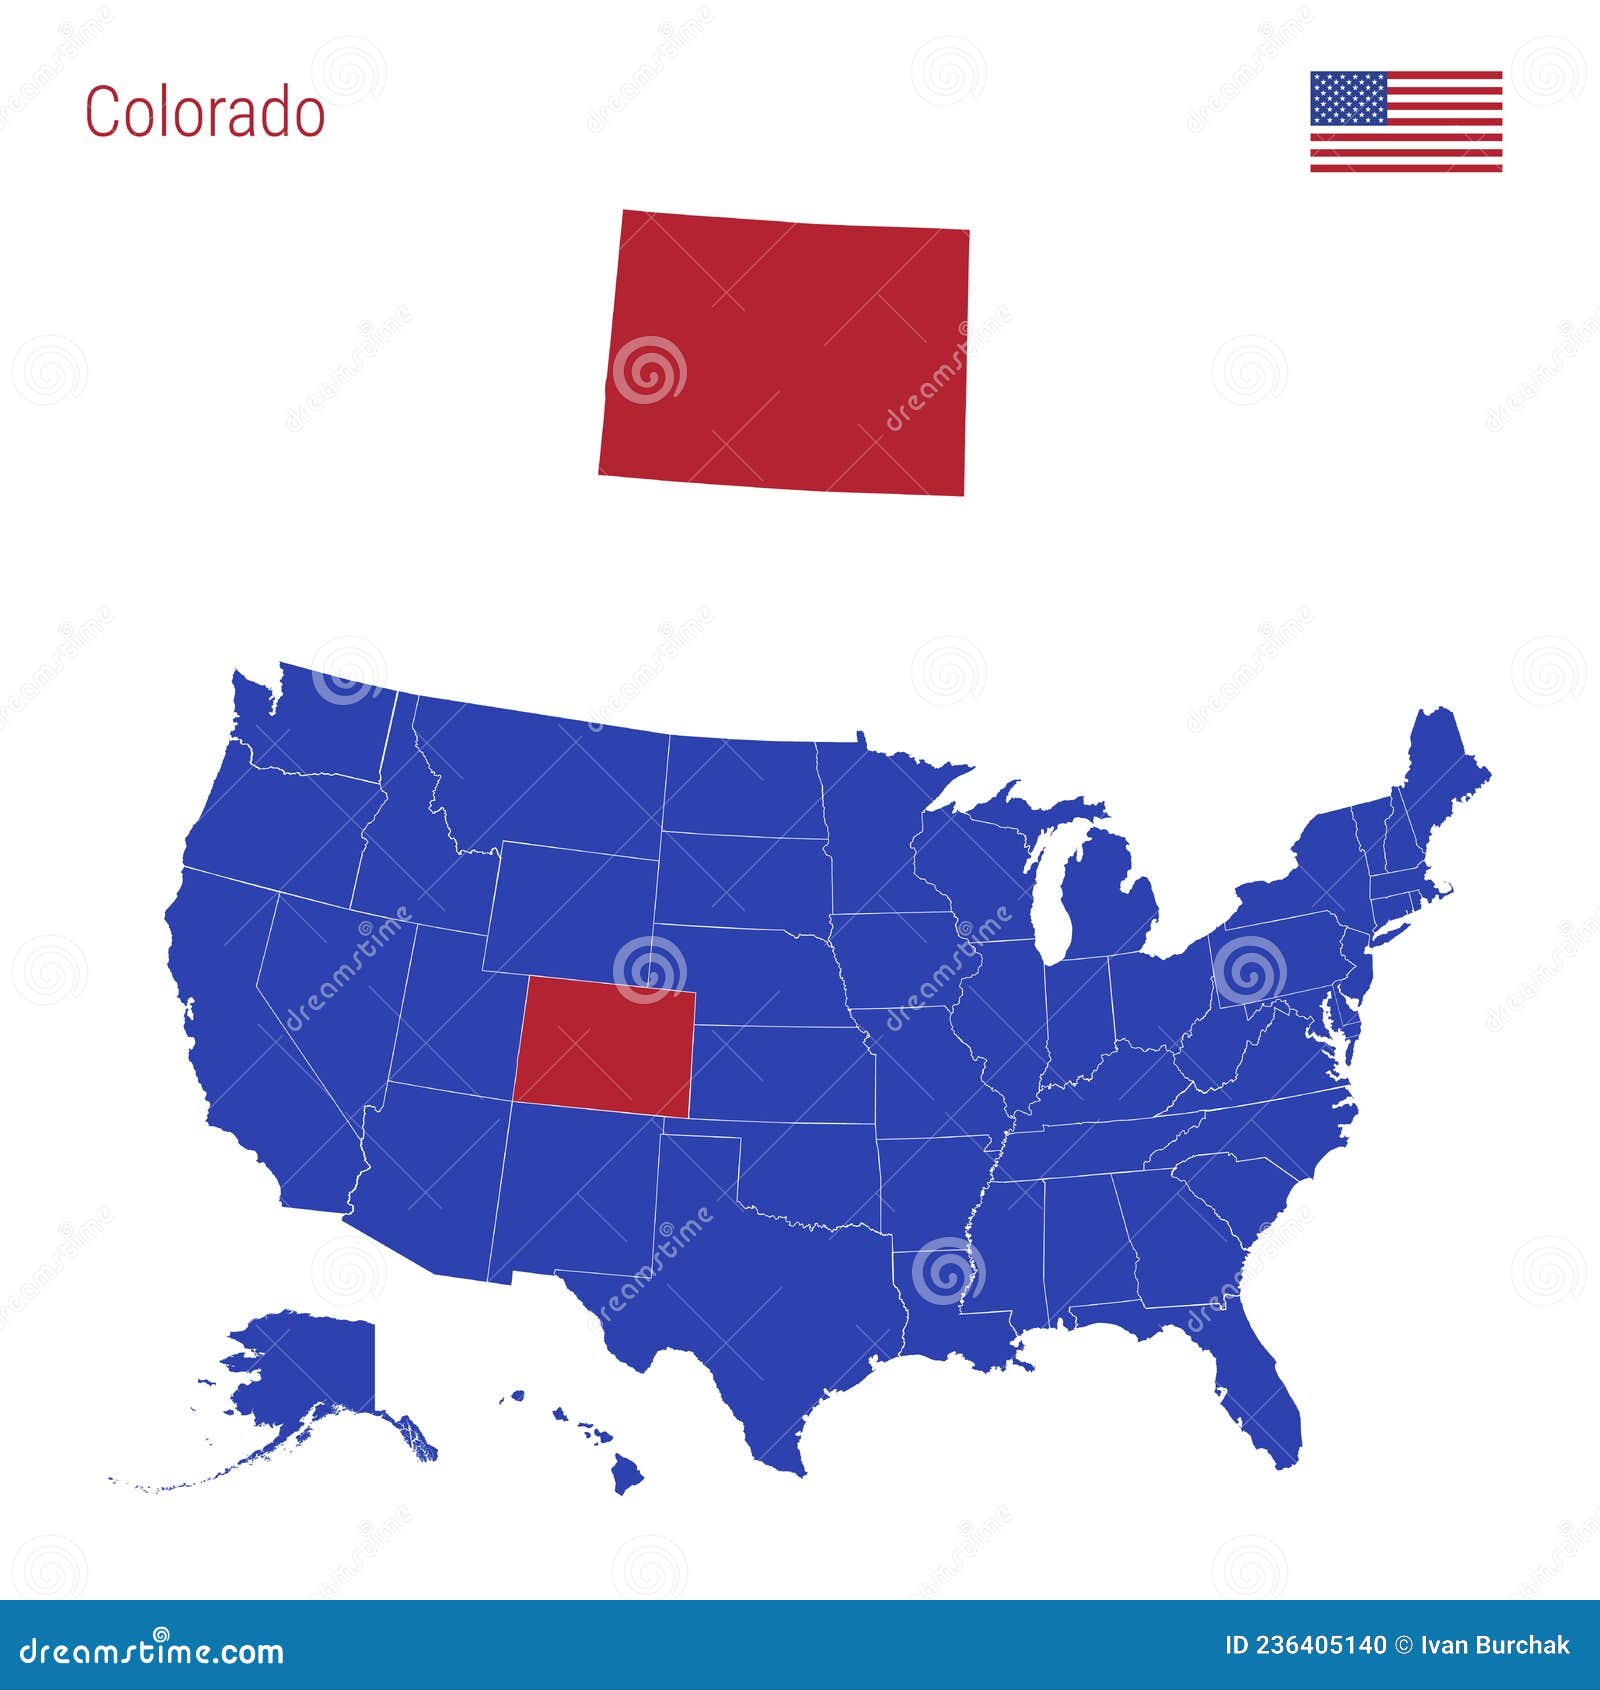 El Estado De Colorado Se Resalta En Rojo Mapa Vectorial De Los Estados Unidos Dividido En